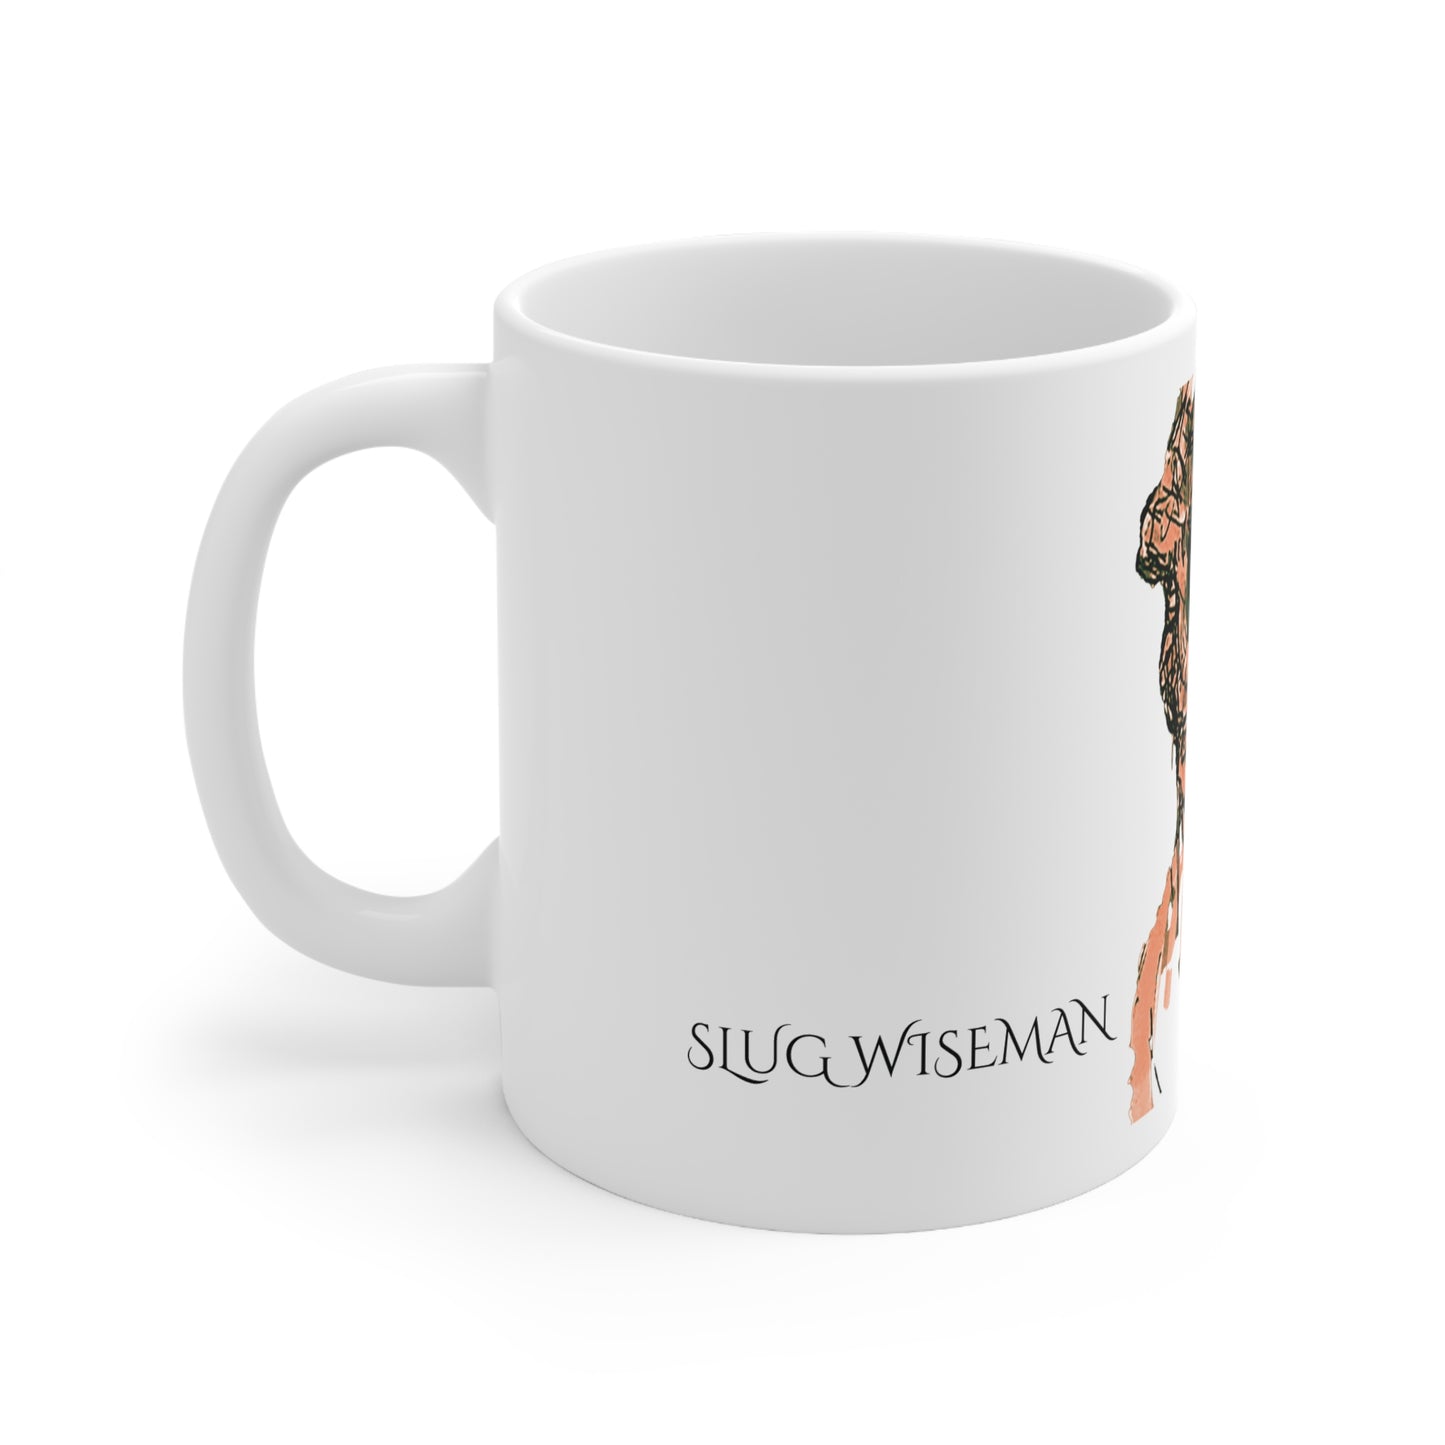 In the Sight of Slug Wiseman Mug